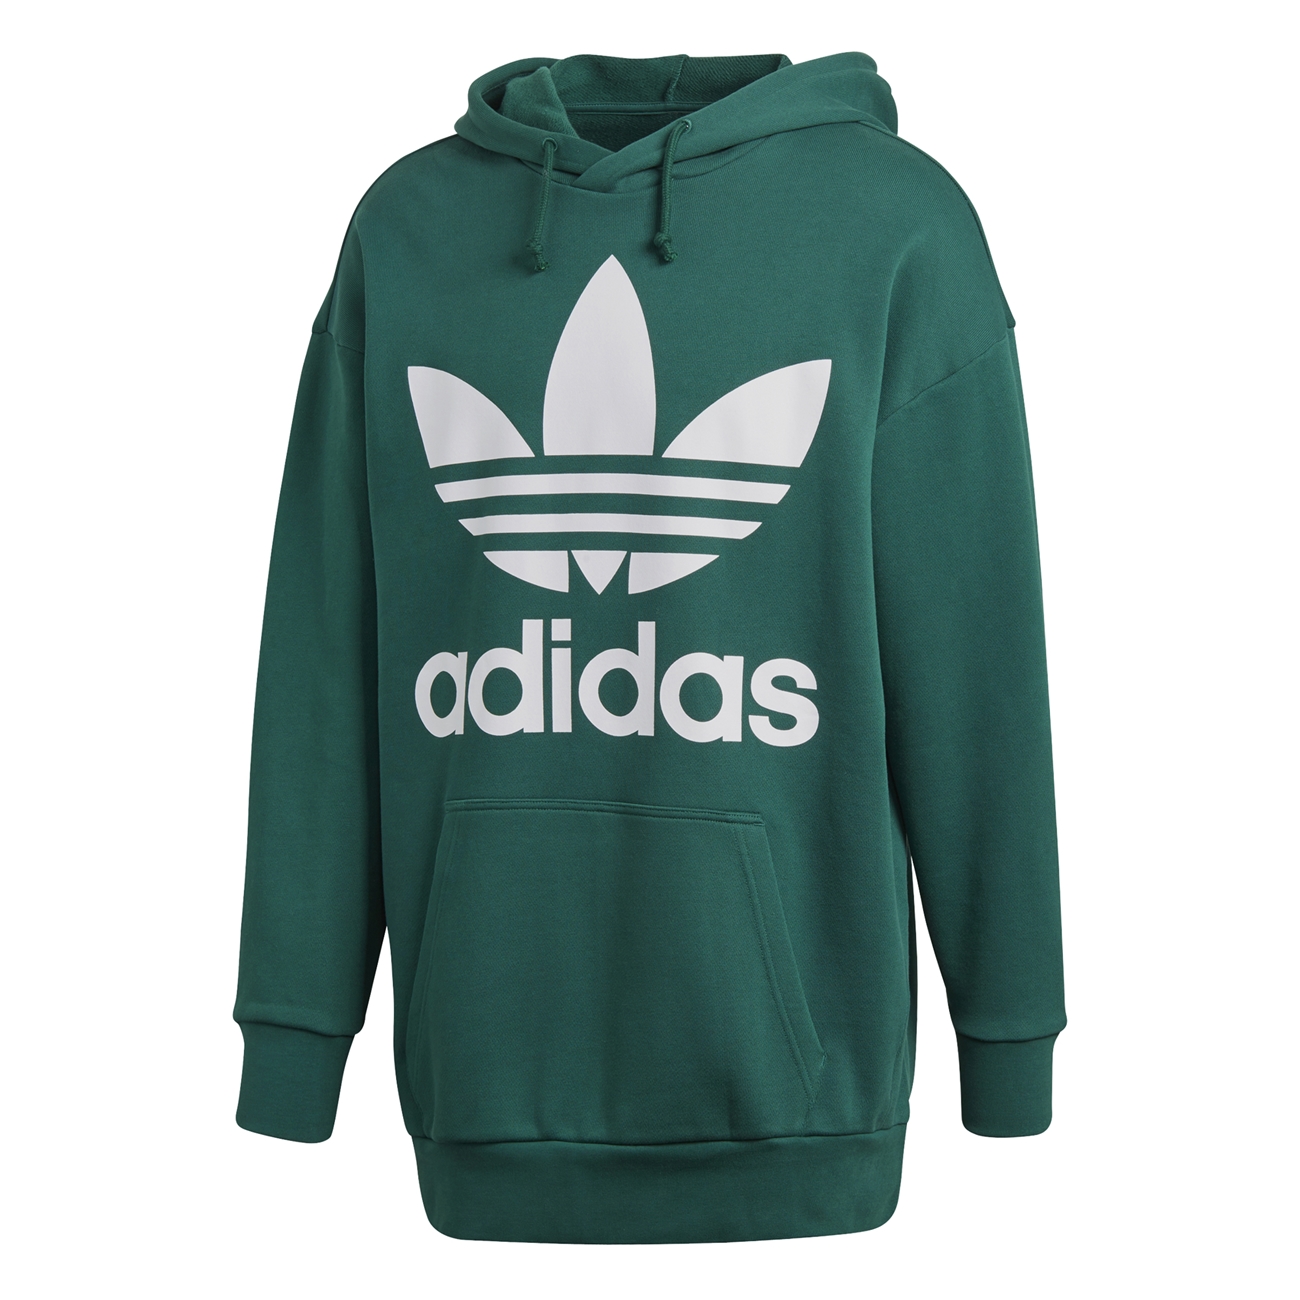 adidas hoodie green trefoil